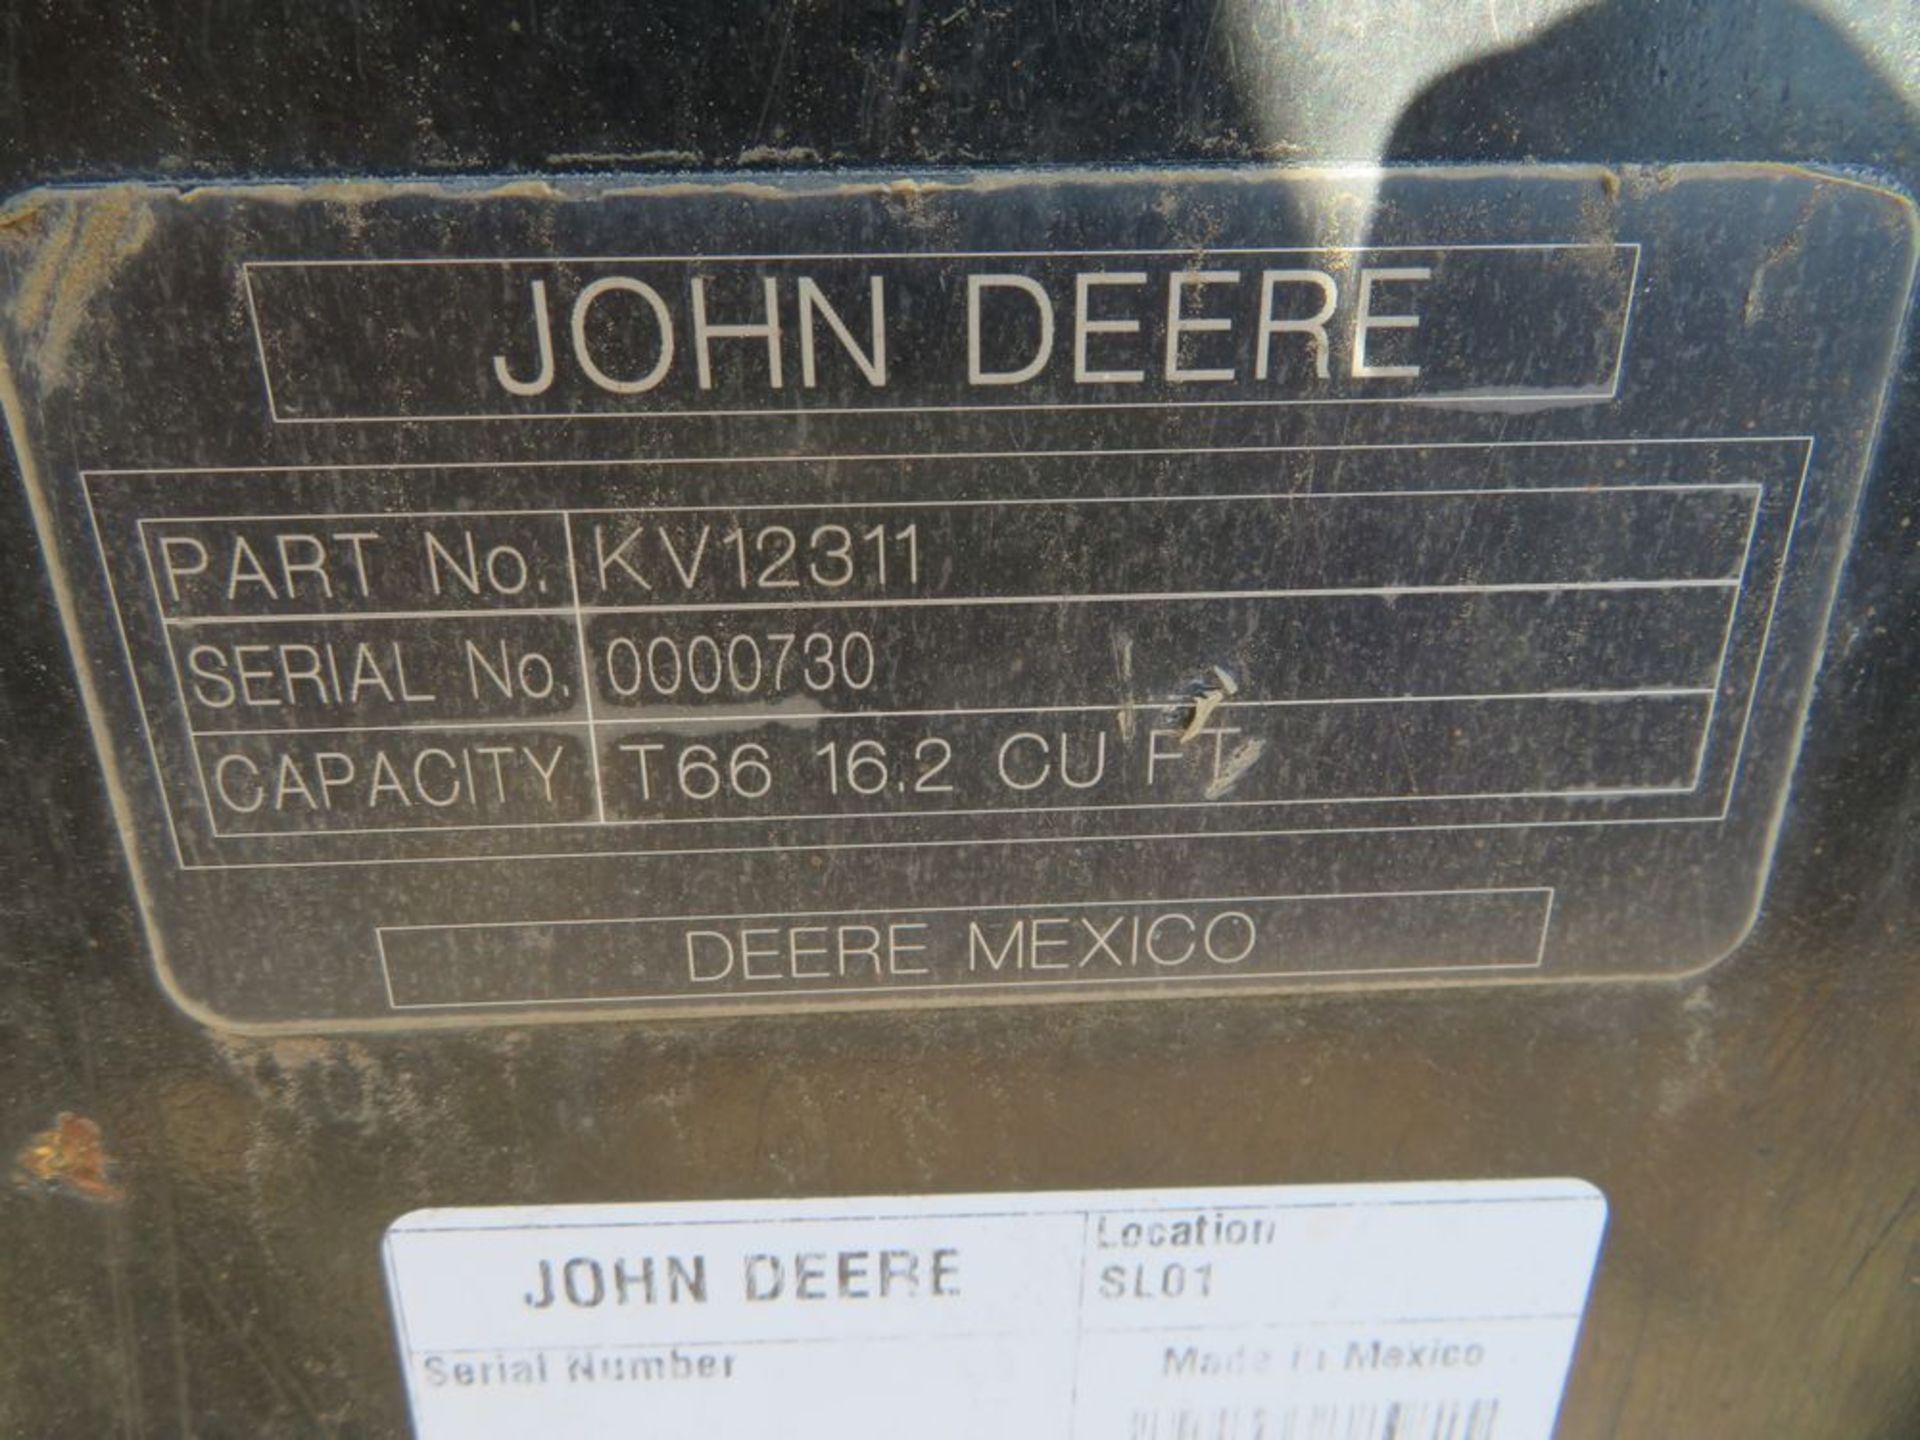 (2017) John Deere mod. T-66, 66" Low Profile Bucket w/ Bolts on Teeth; S/N 0000730 - Image 3 of 3